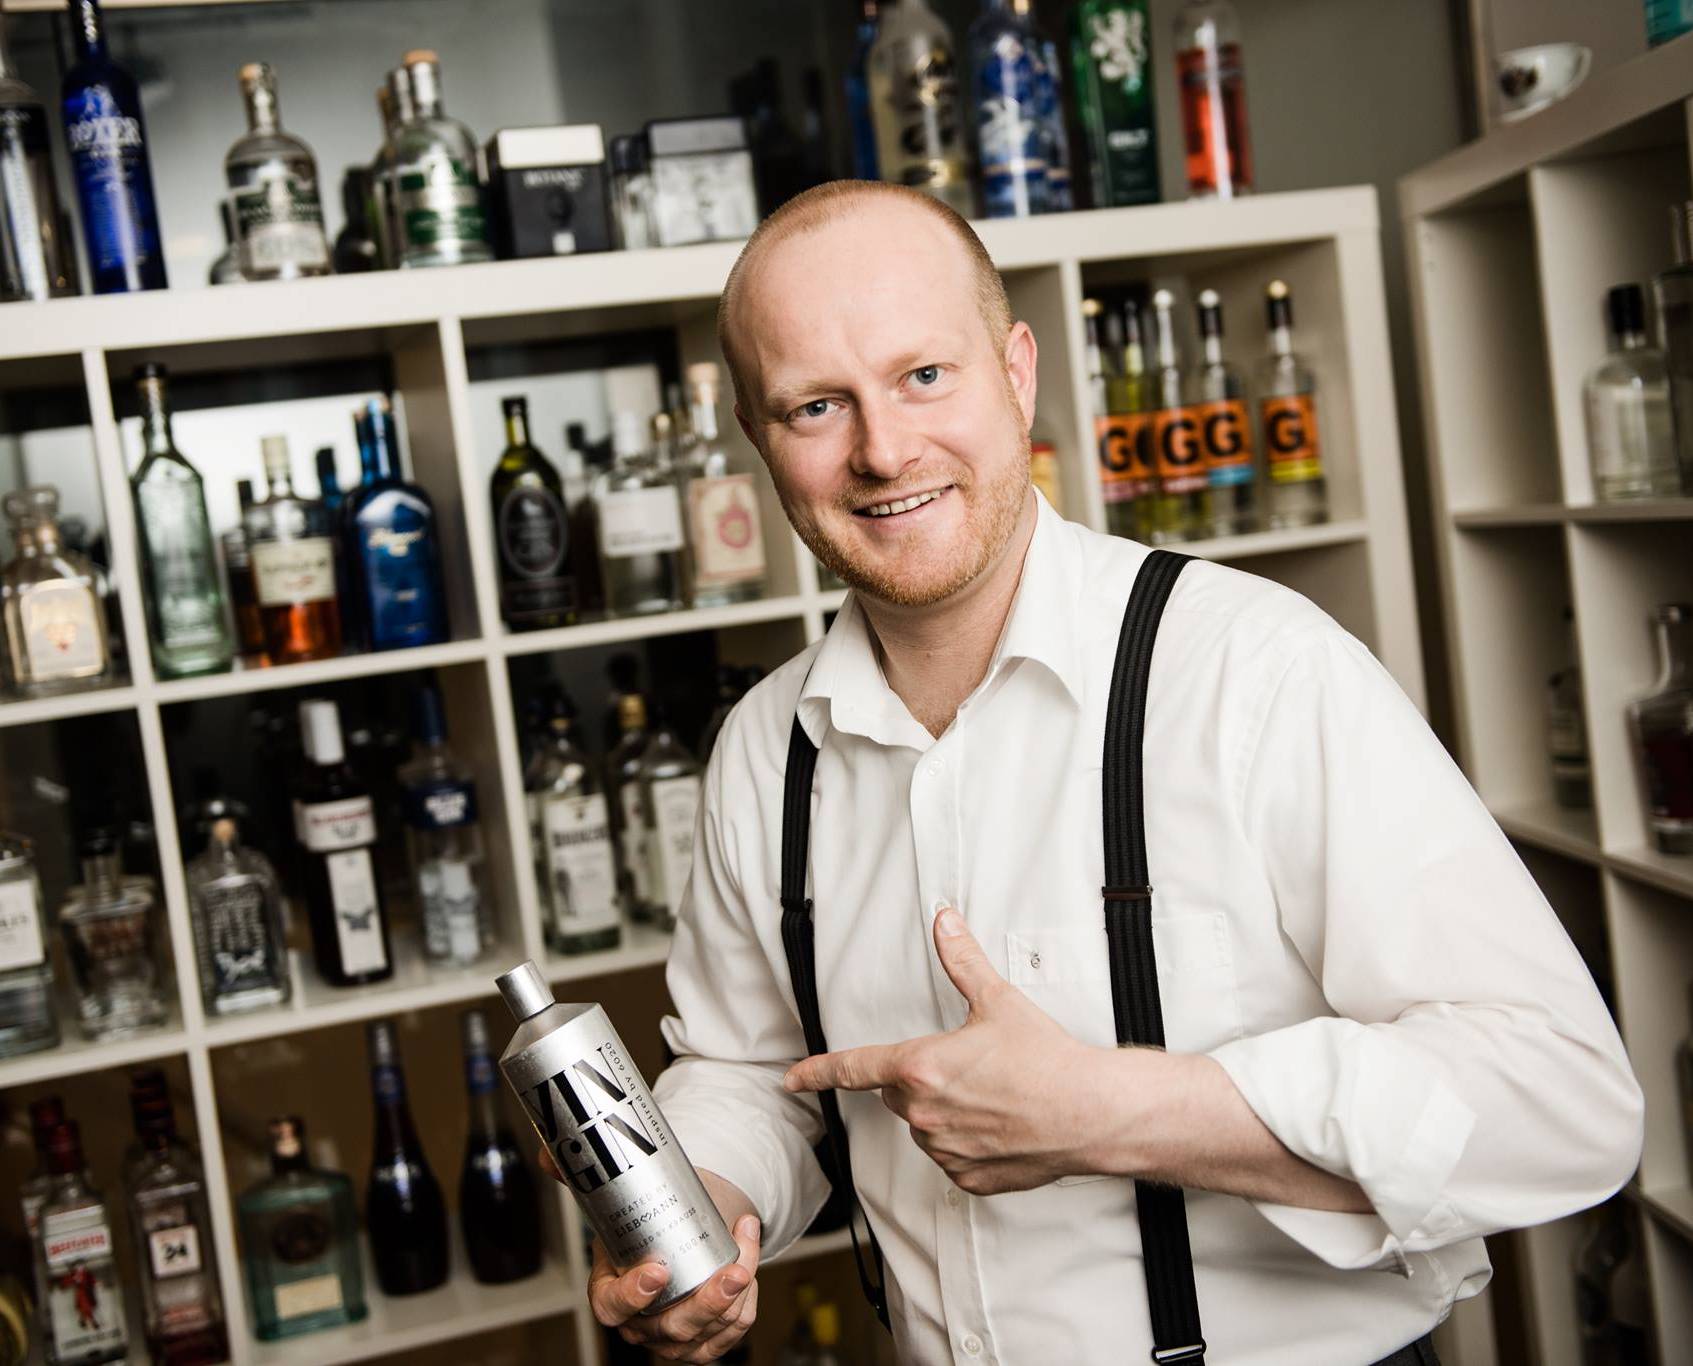 Gin expert in 4 star hotel Liebmann